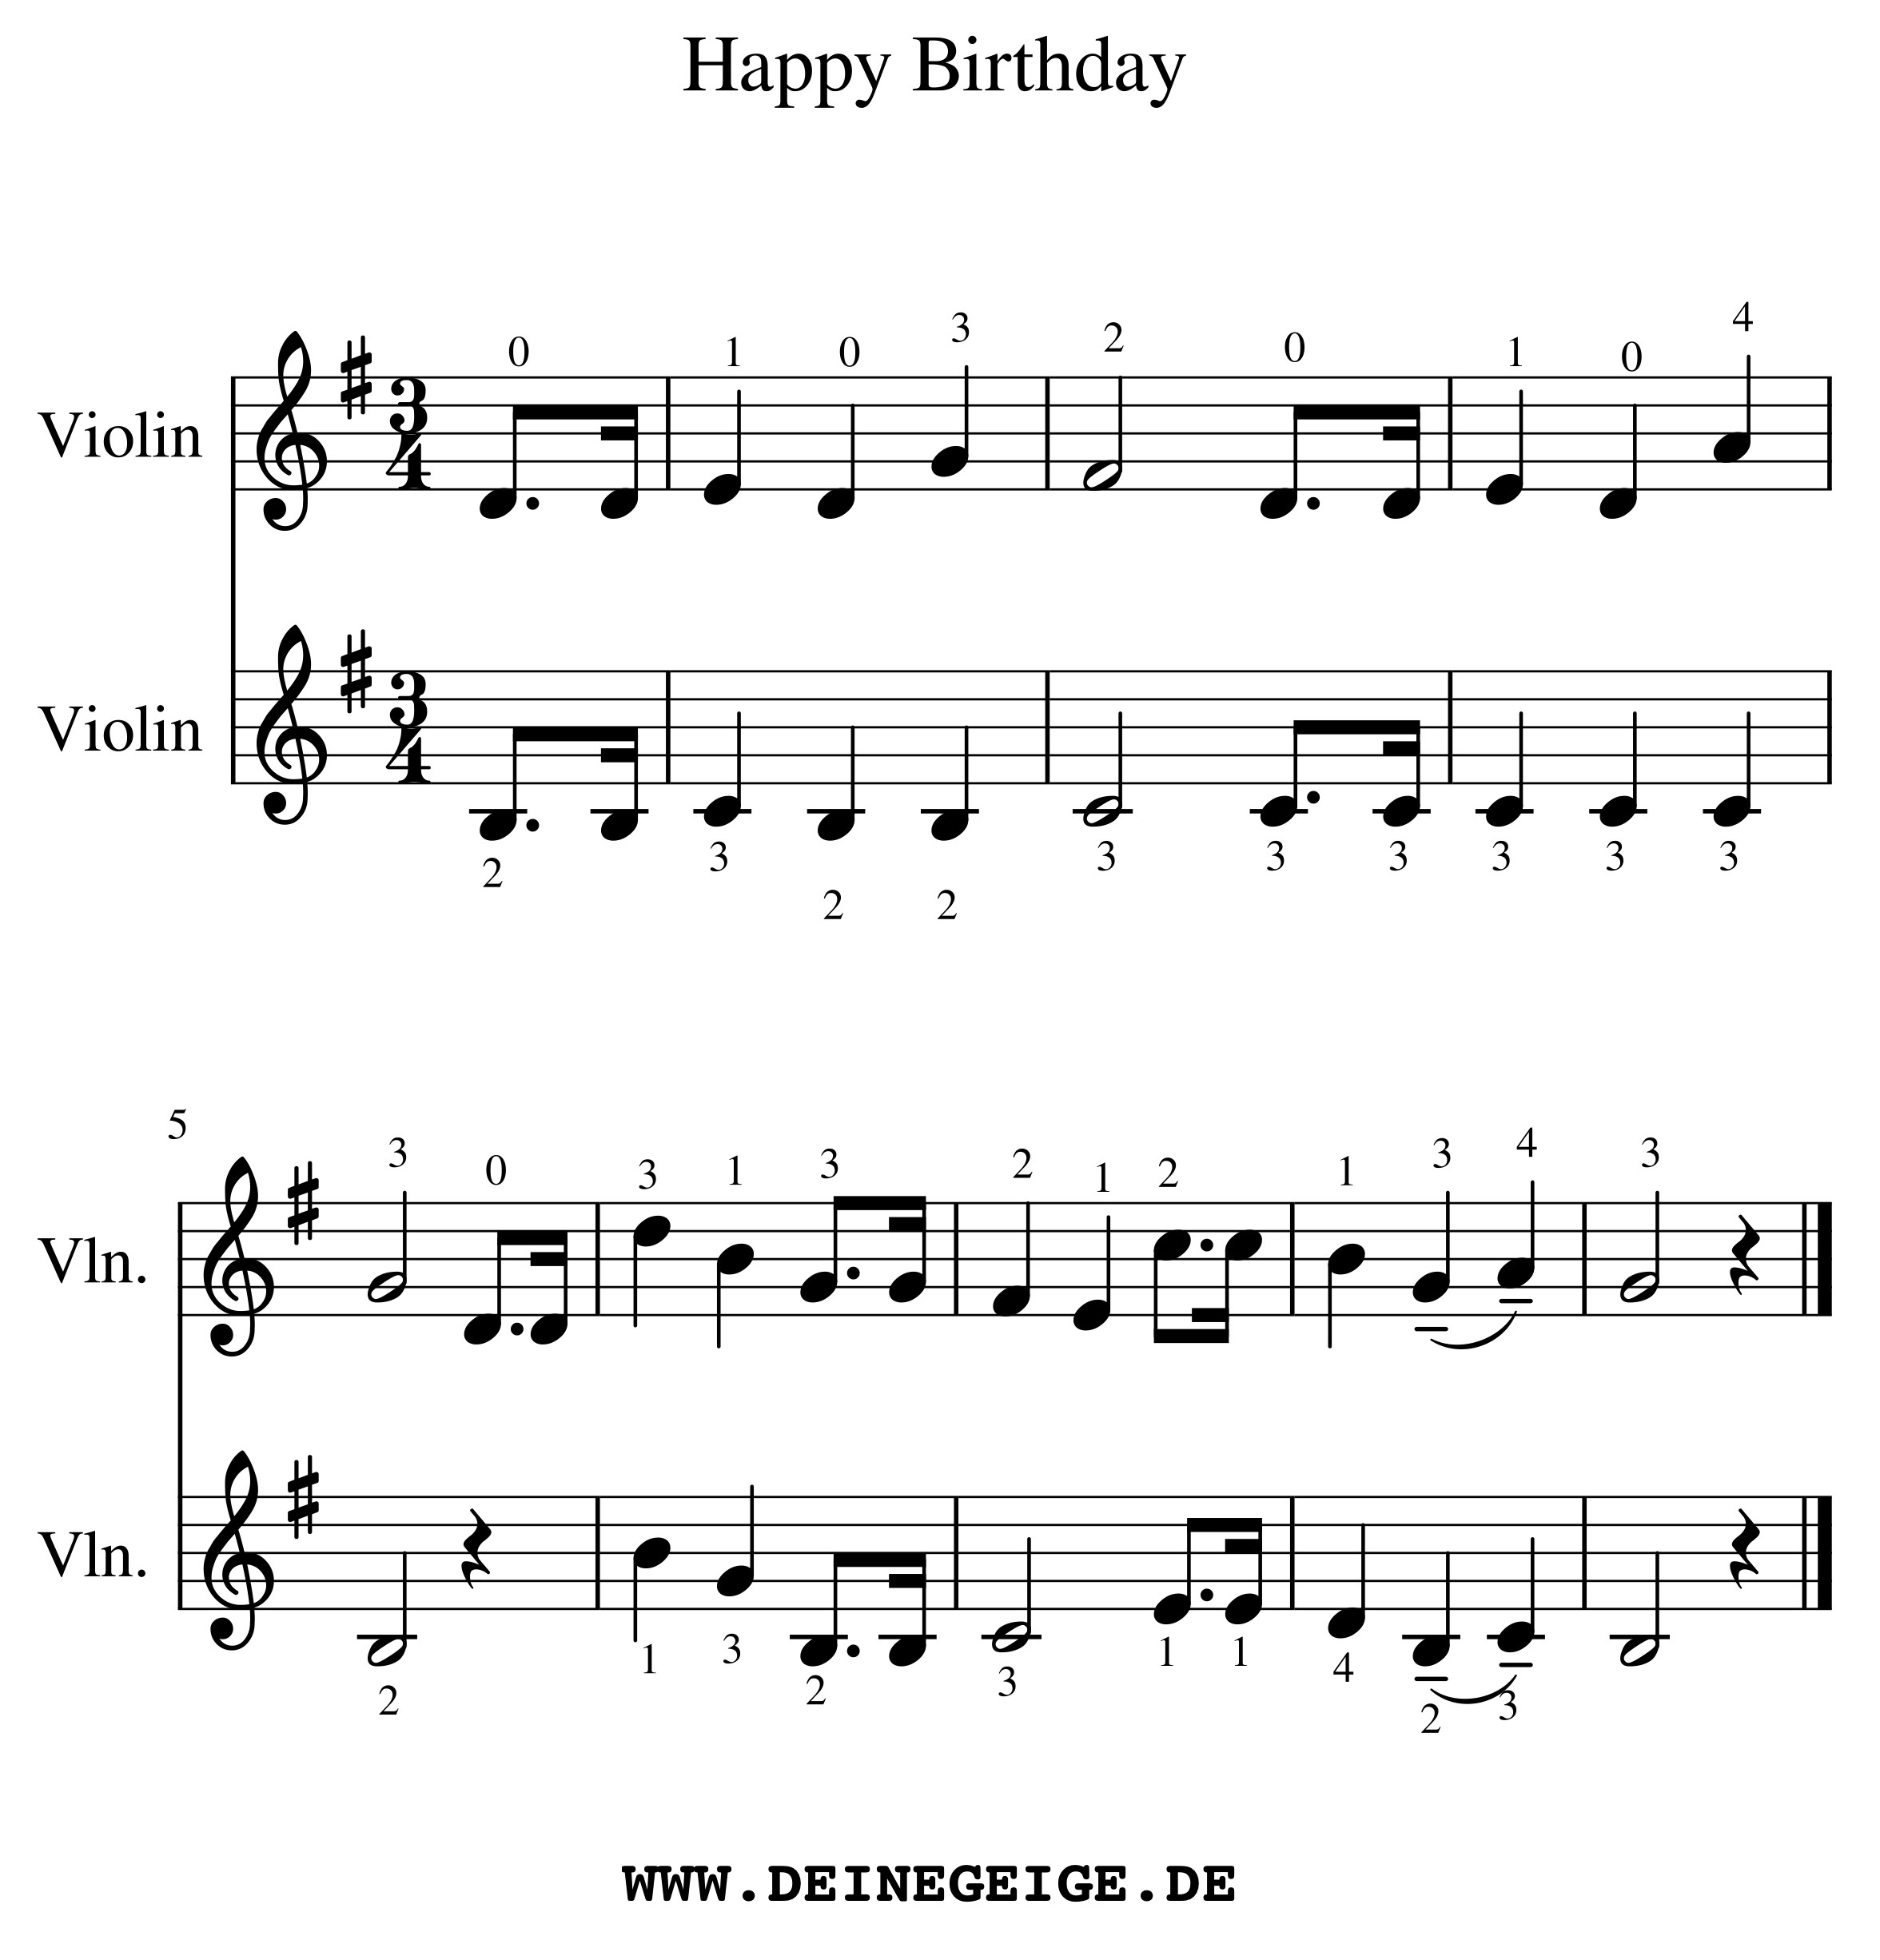 Happy Birthday Zum Geburtstag Viel Gluck Kostenlose Noten Musikparadies Wiesbaden